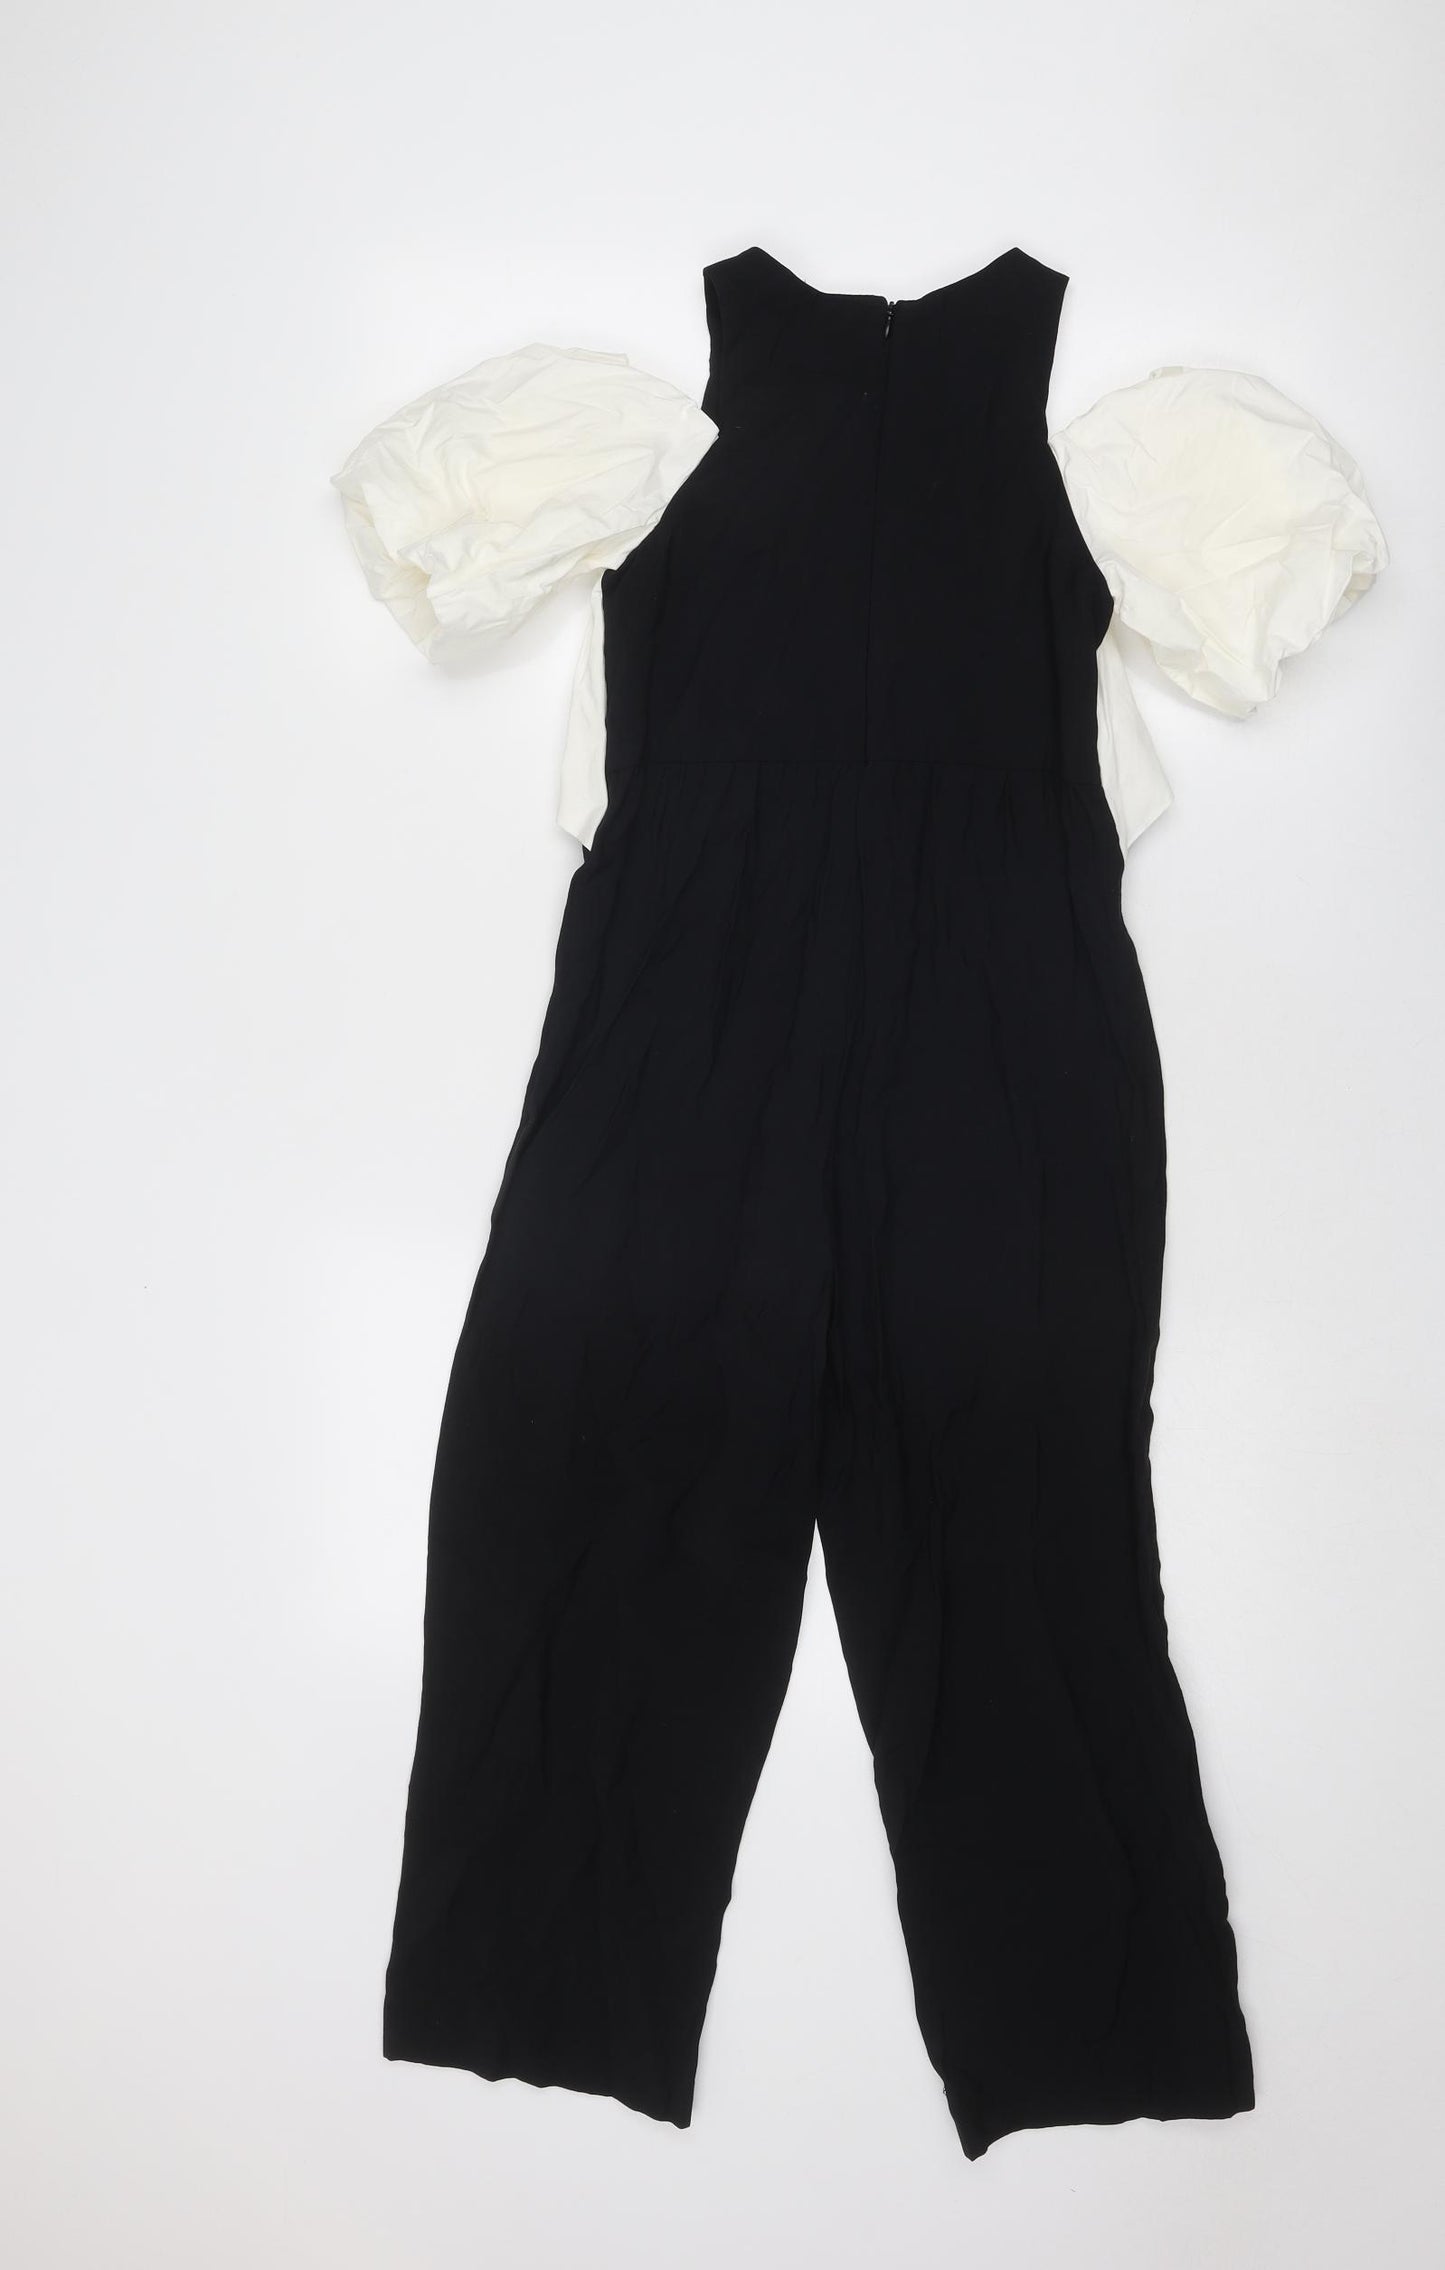 Zara Girls Black Cotton Jumpsuit One-Piece Size 10 Years Zip - Cold Shoulder